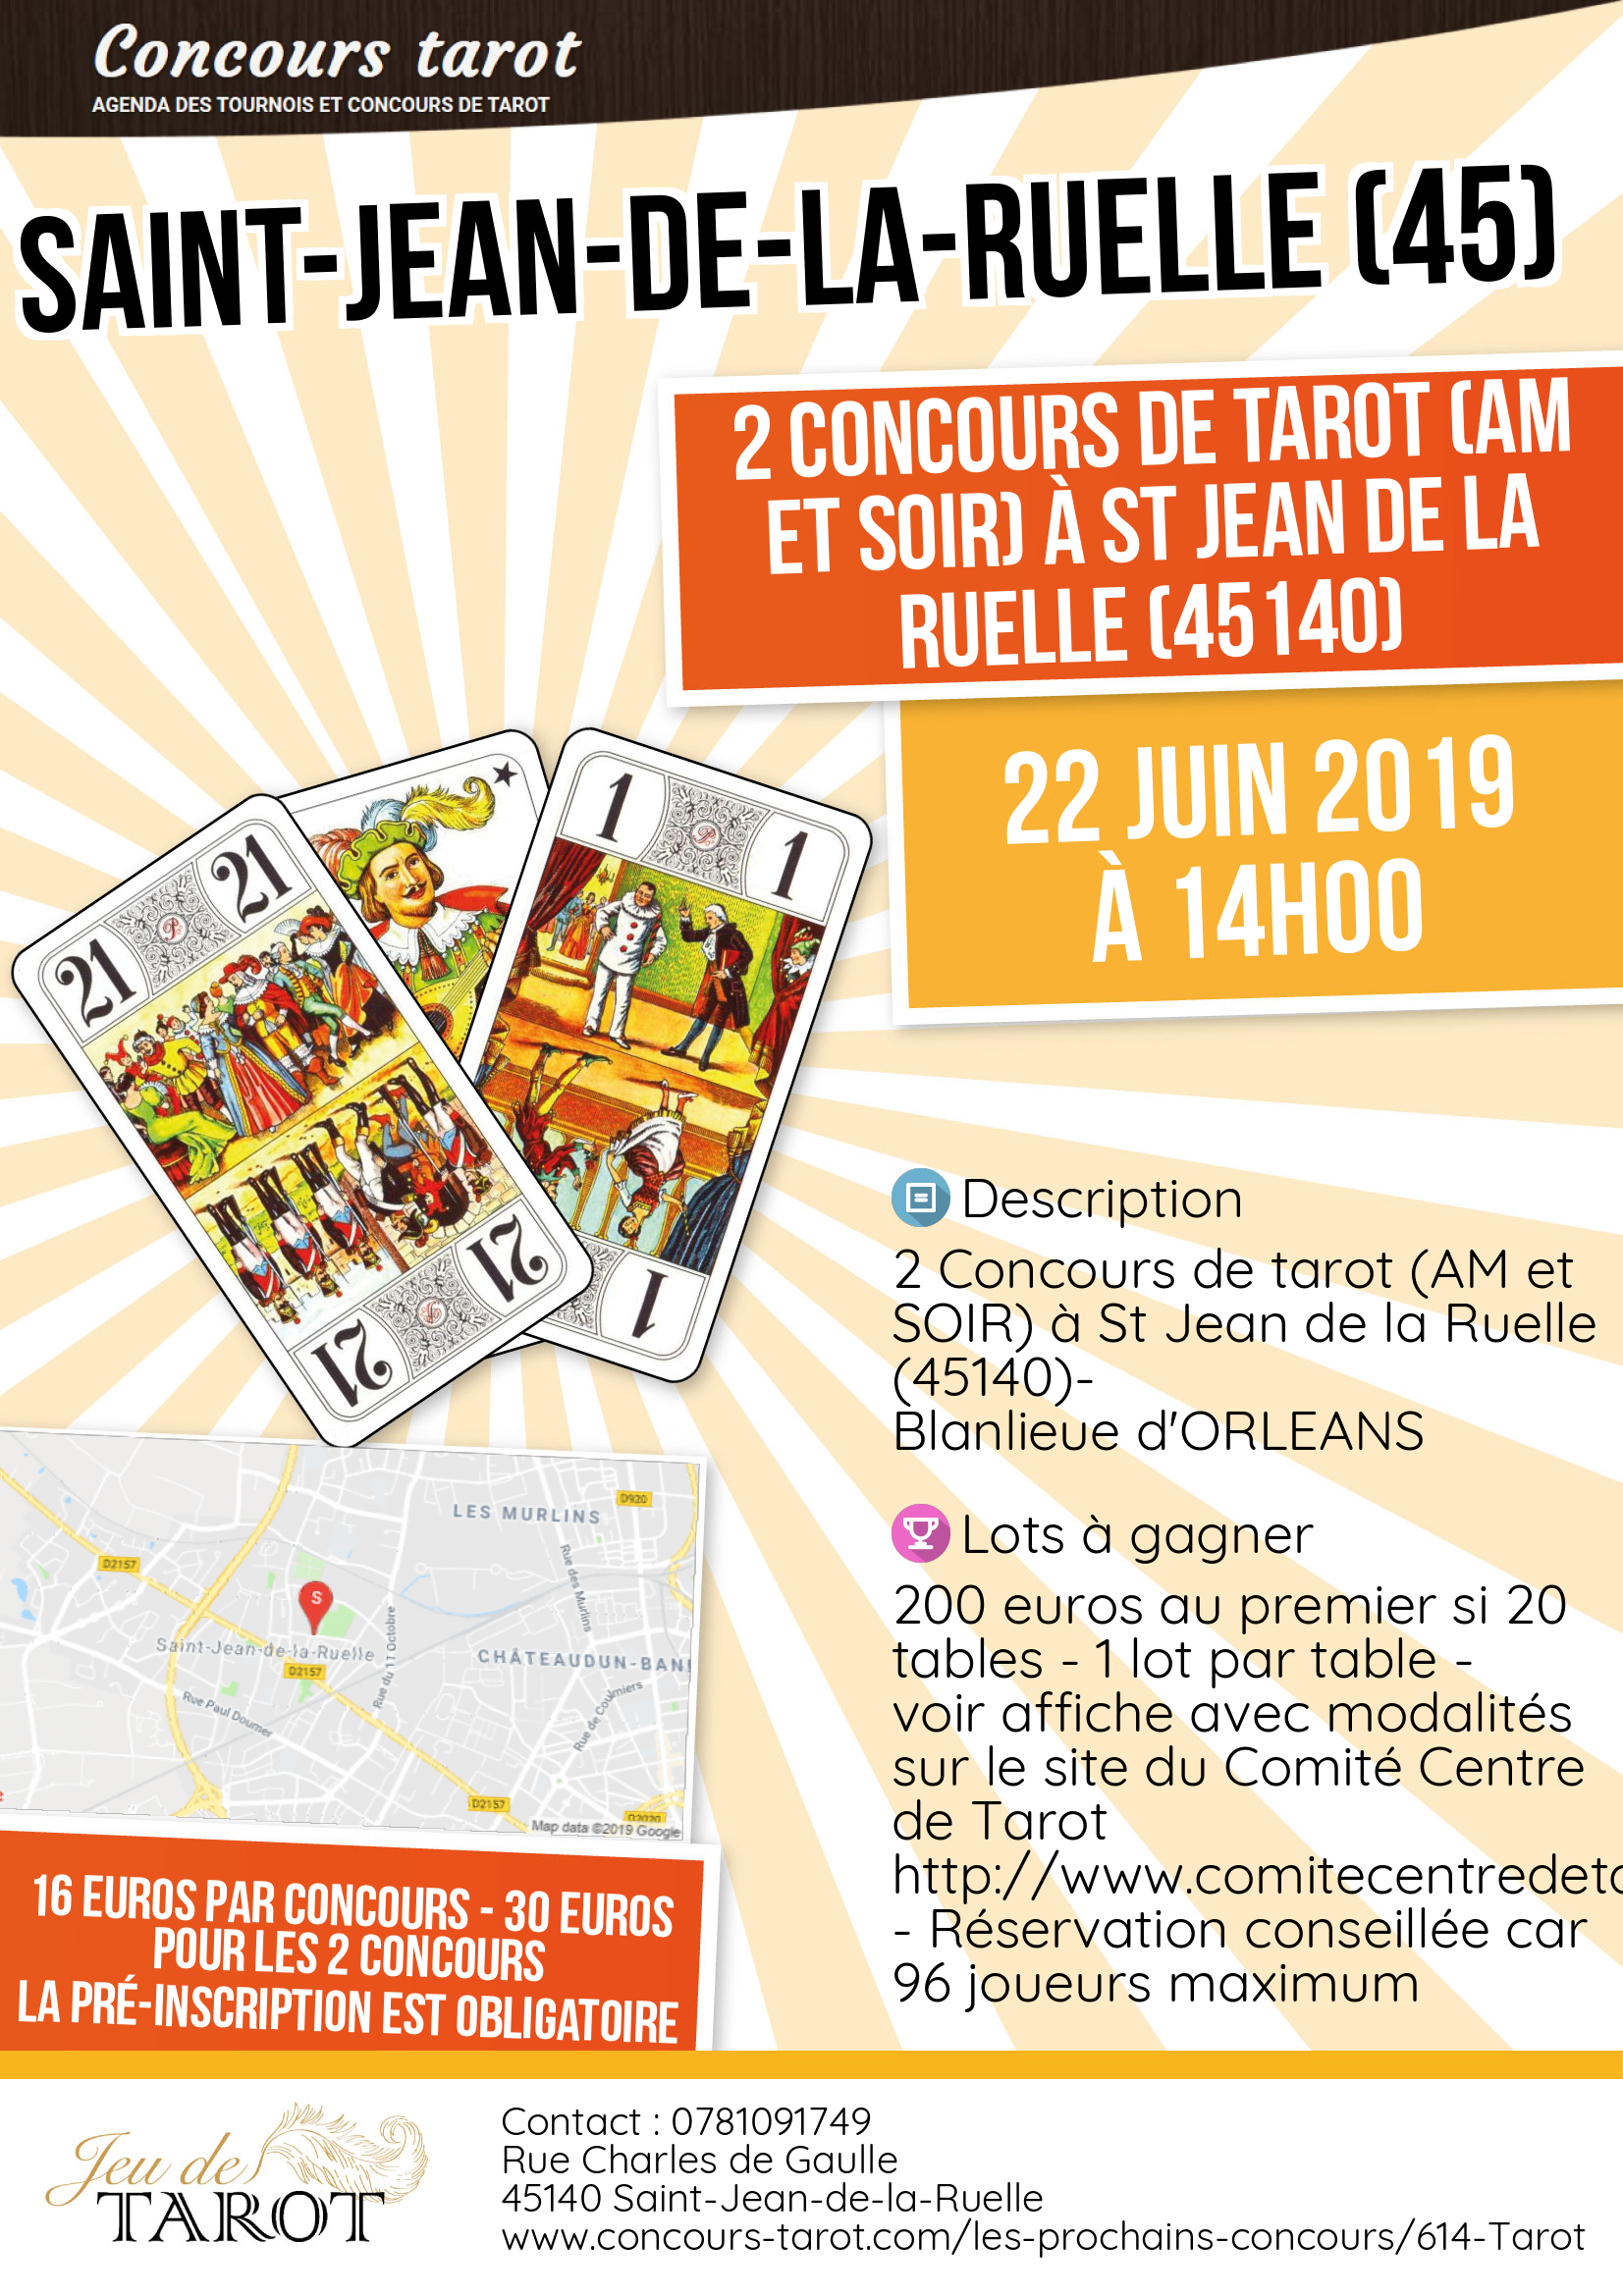 2 Concours de tarot AM et SOIR a St Jean de la Ruelle 45140